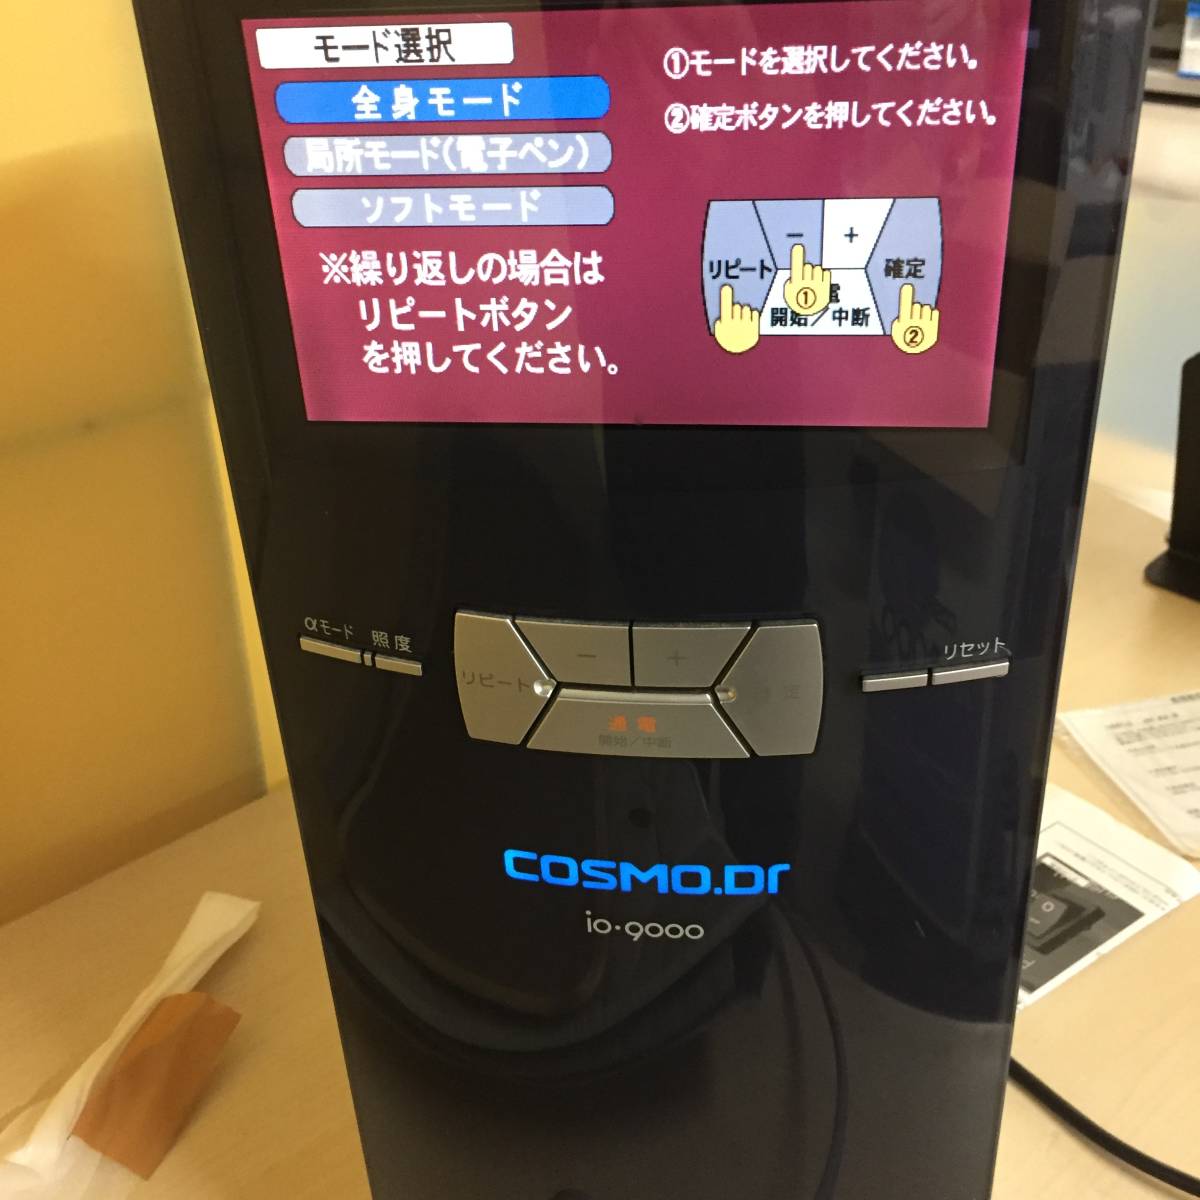 ■コスモヘルス コスモドクター io-9000 COSMO Dr. イオ9000 電位治療器 【22/0907/01